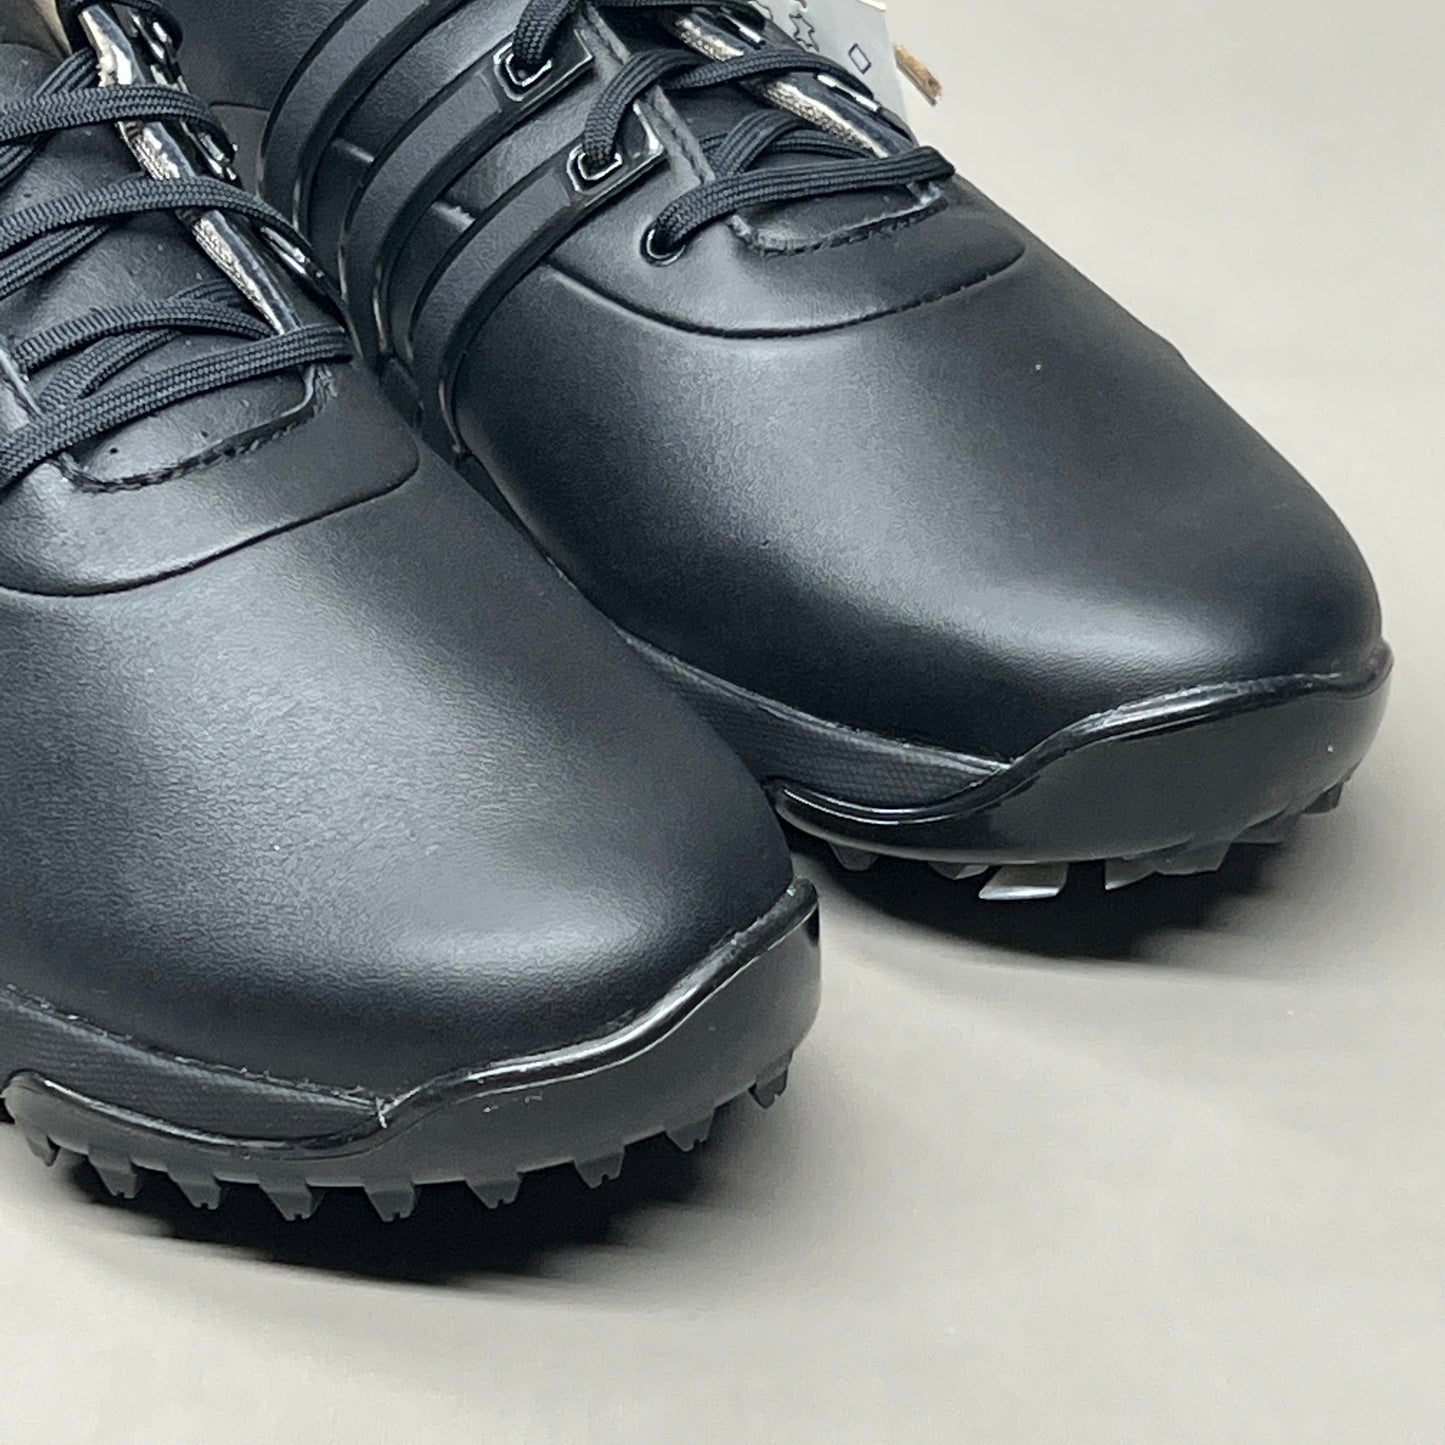 ADIDAS Golf Shoes TOUR360 22 Leather Men's Sz 8.5 Black / Iron Metallic GZ3158 (New)